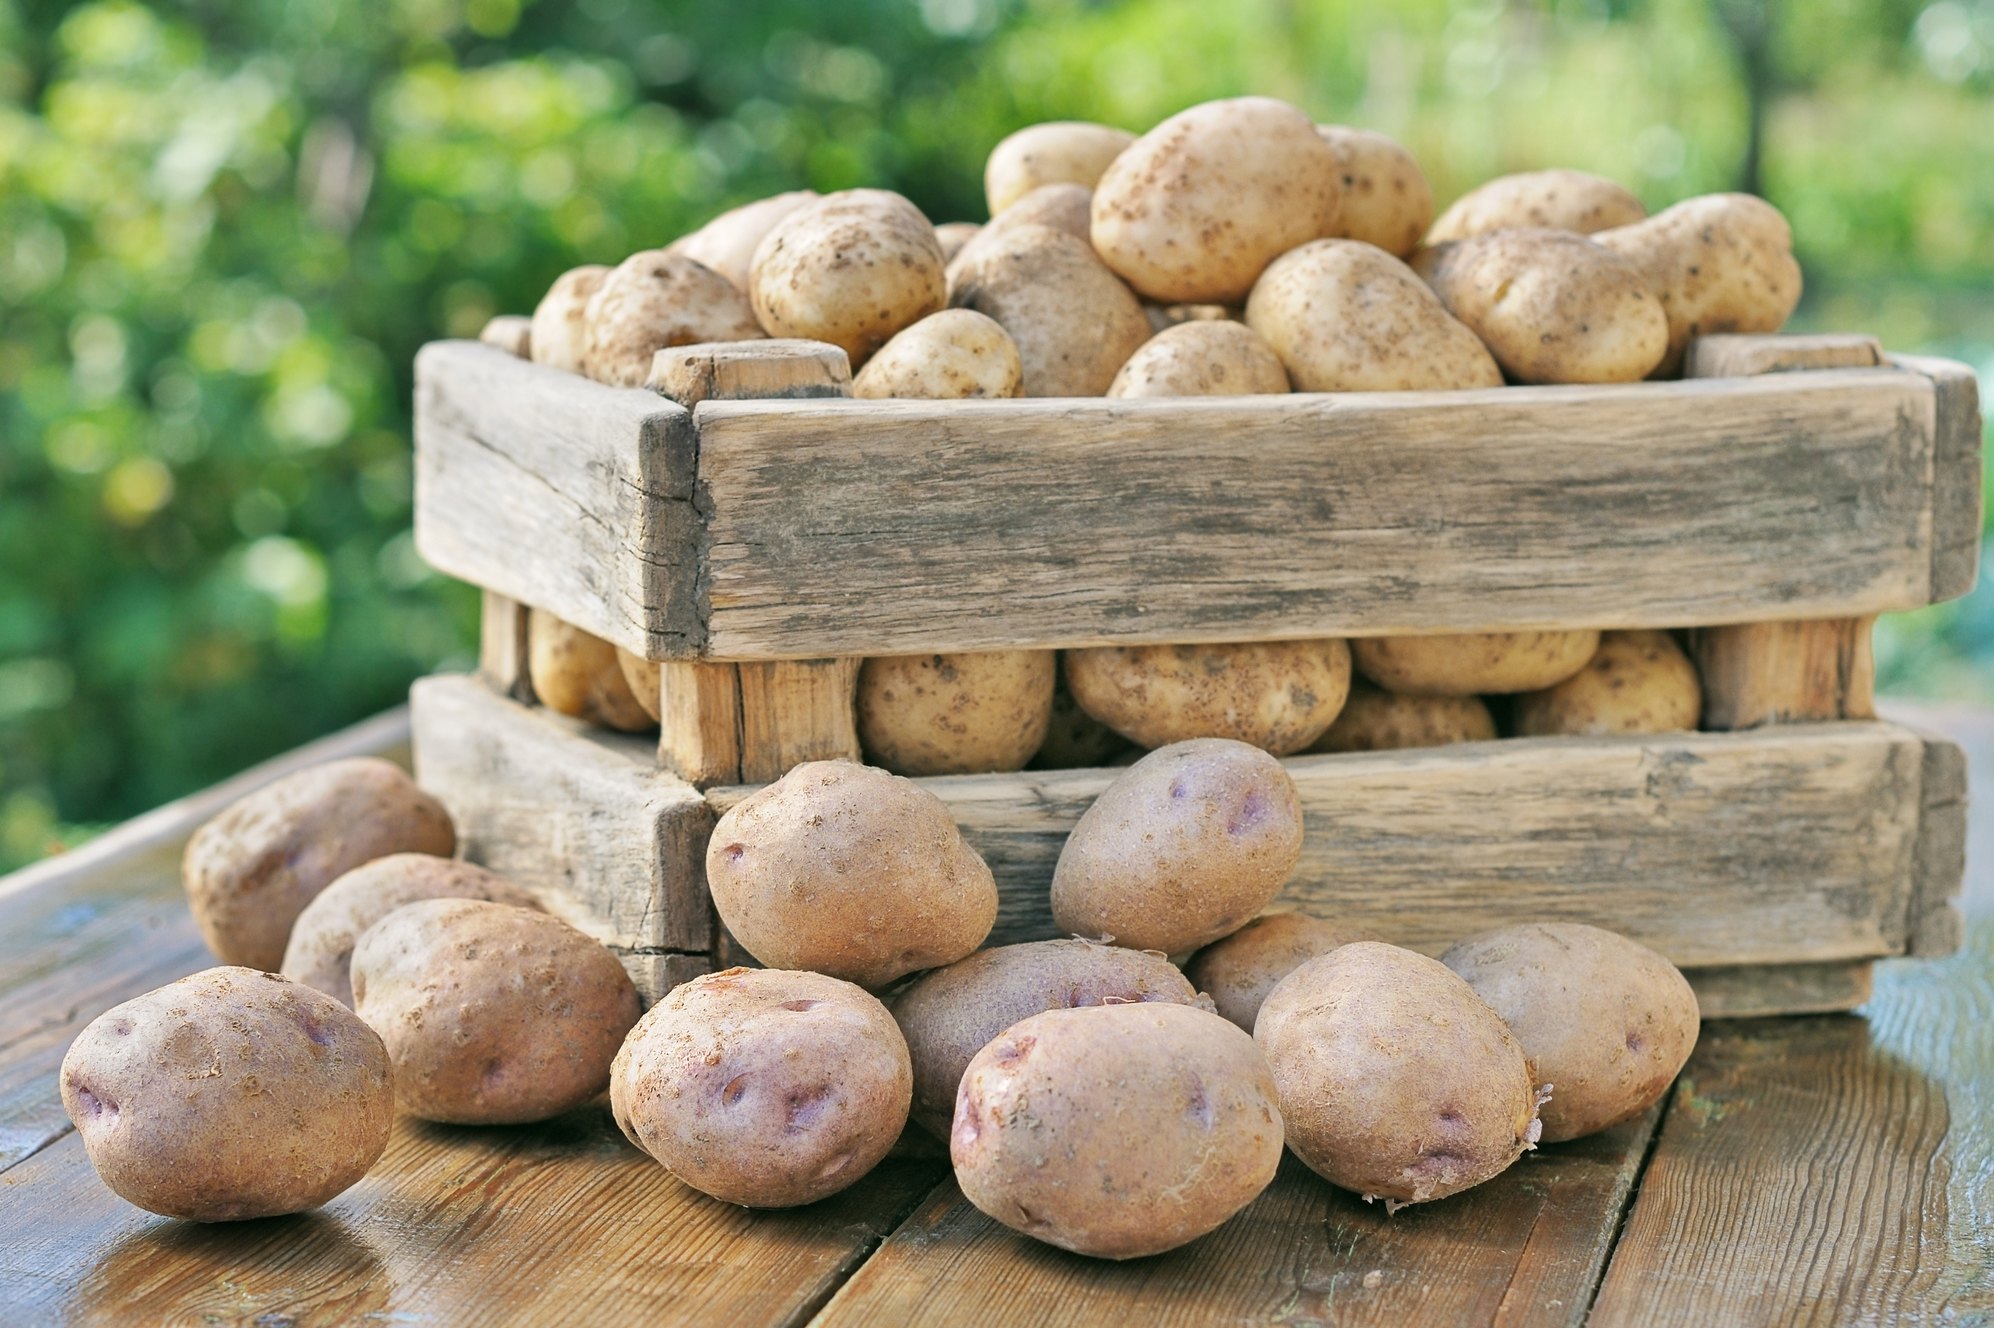 Как сделать ящик для хранения картошки на балконе зимой?